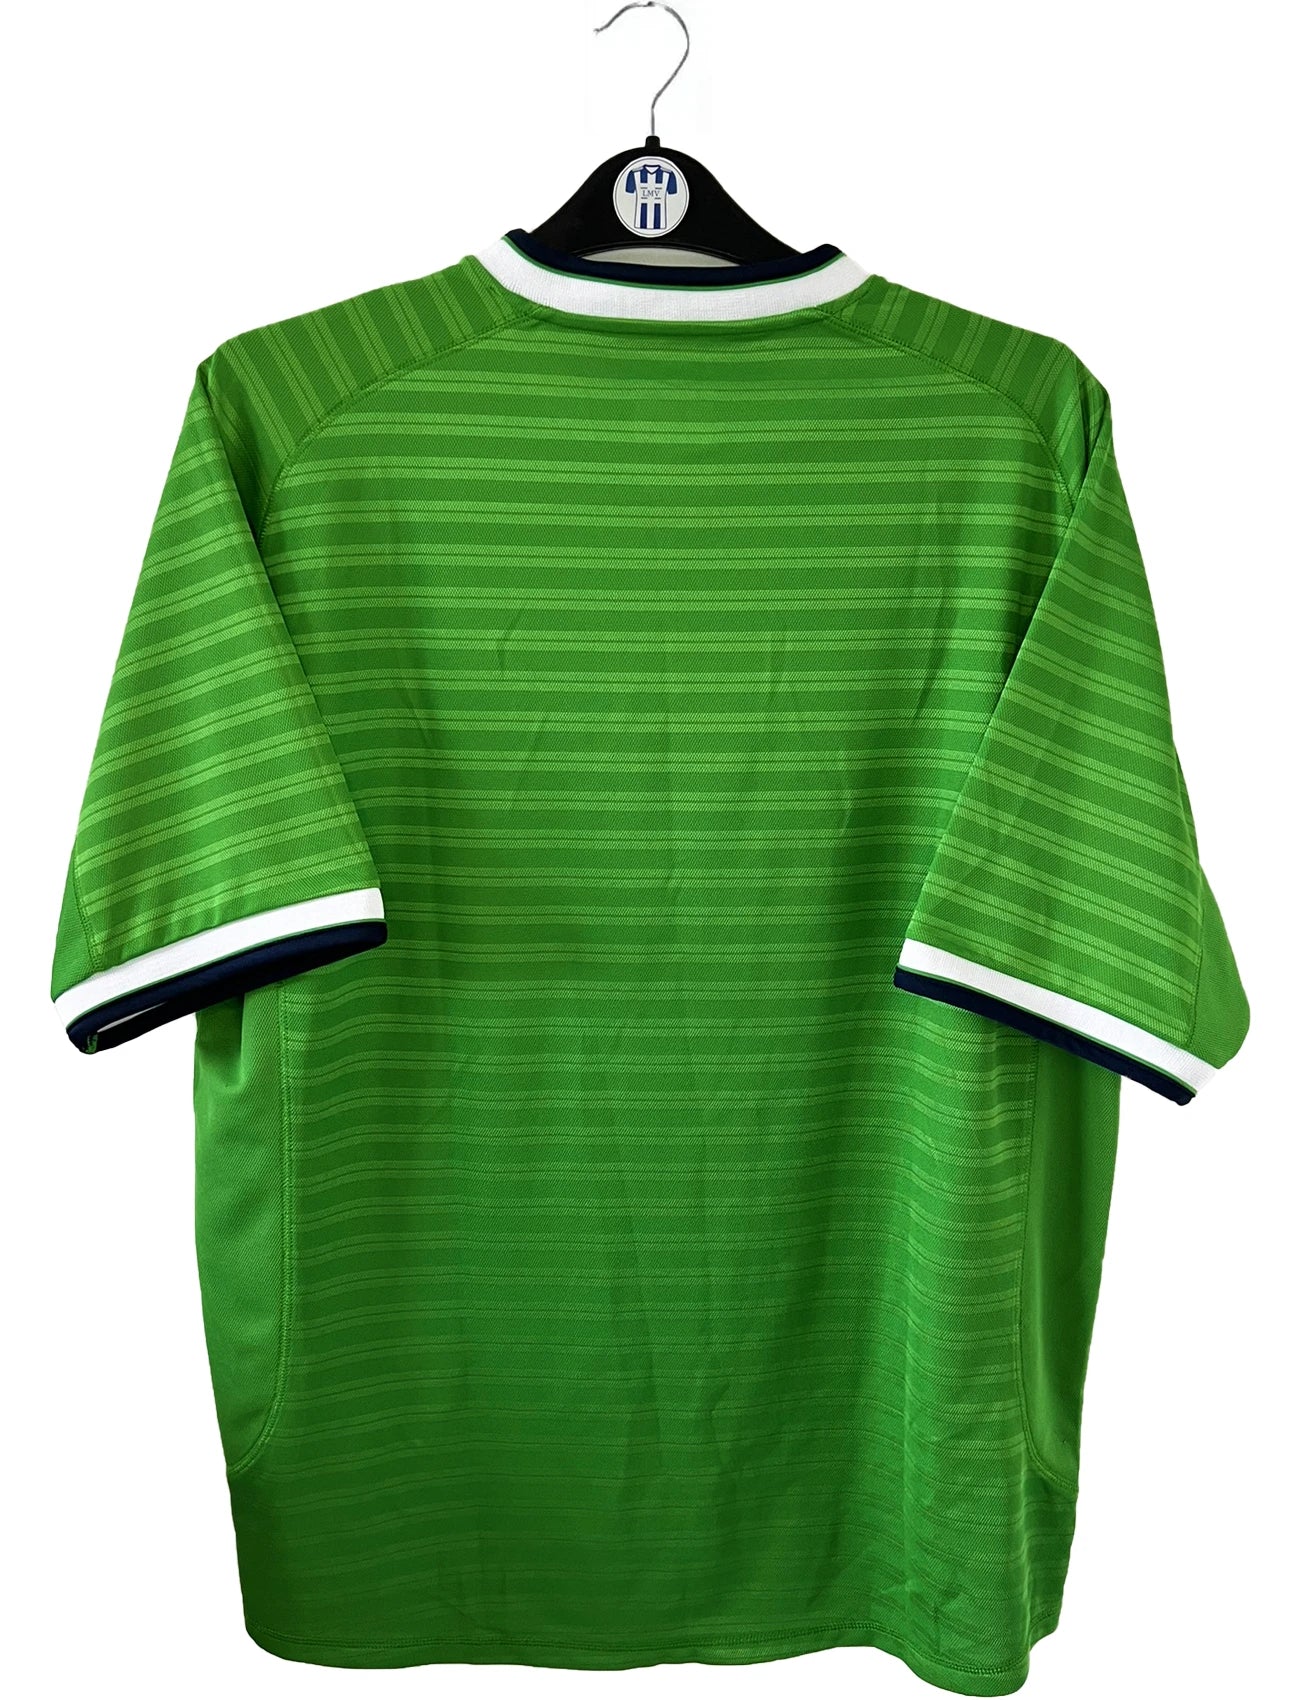 Maillot de foot vintage domicile vert de l'ASSE de la saison 2000/2001. On peut retrouver l'équipementier umbro et le sponsor dreamcast geant. Il s'agit d'un maillot authentique d'époque.